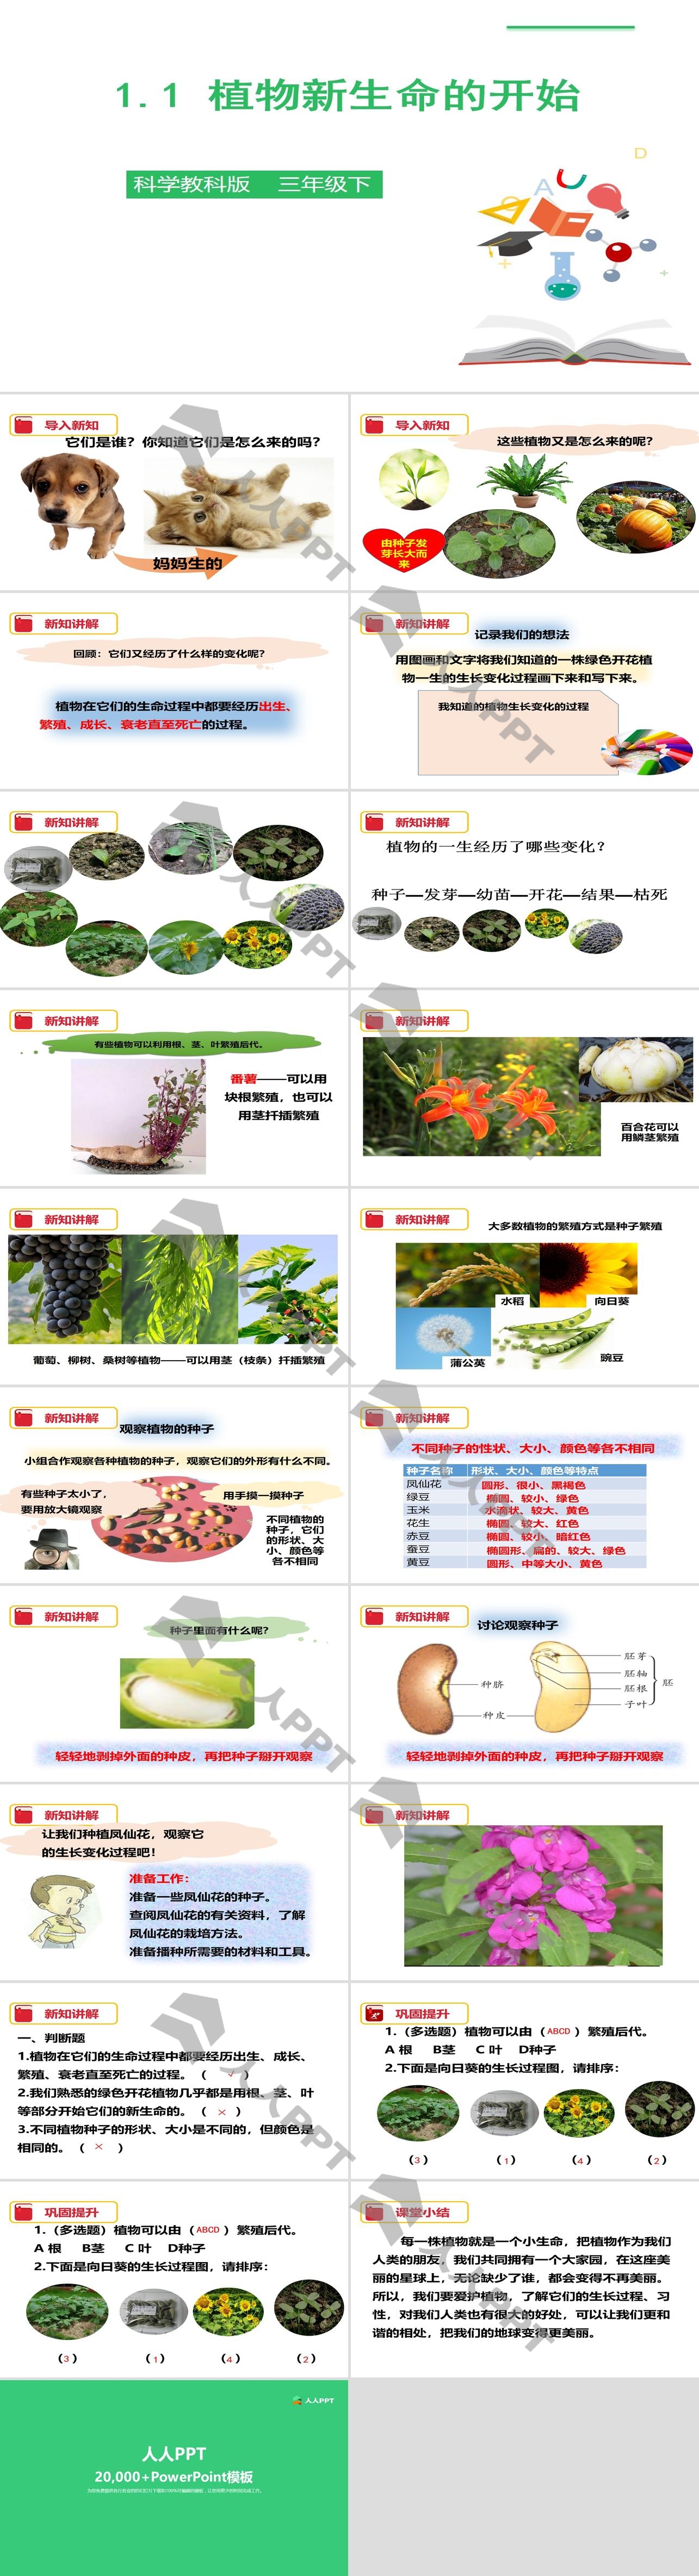 《植物新生命的开始》植物的生长变化PPT下载长图